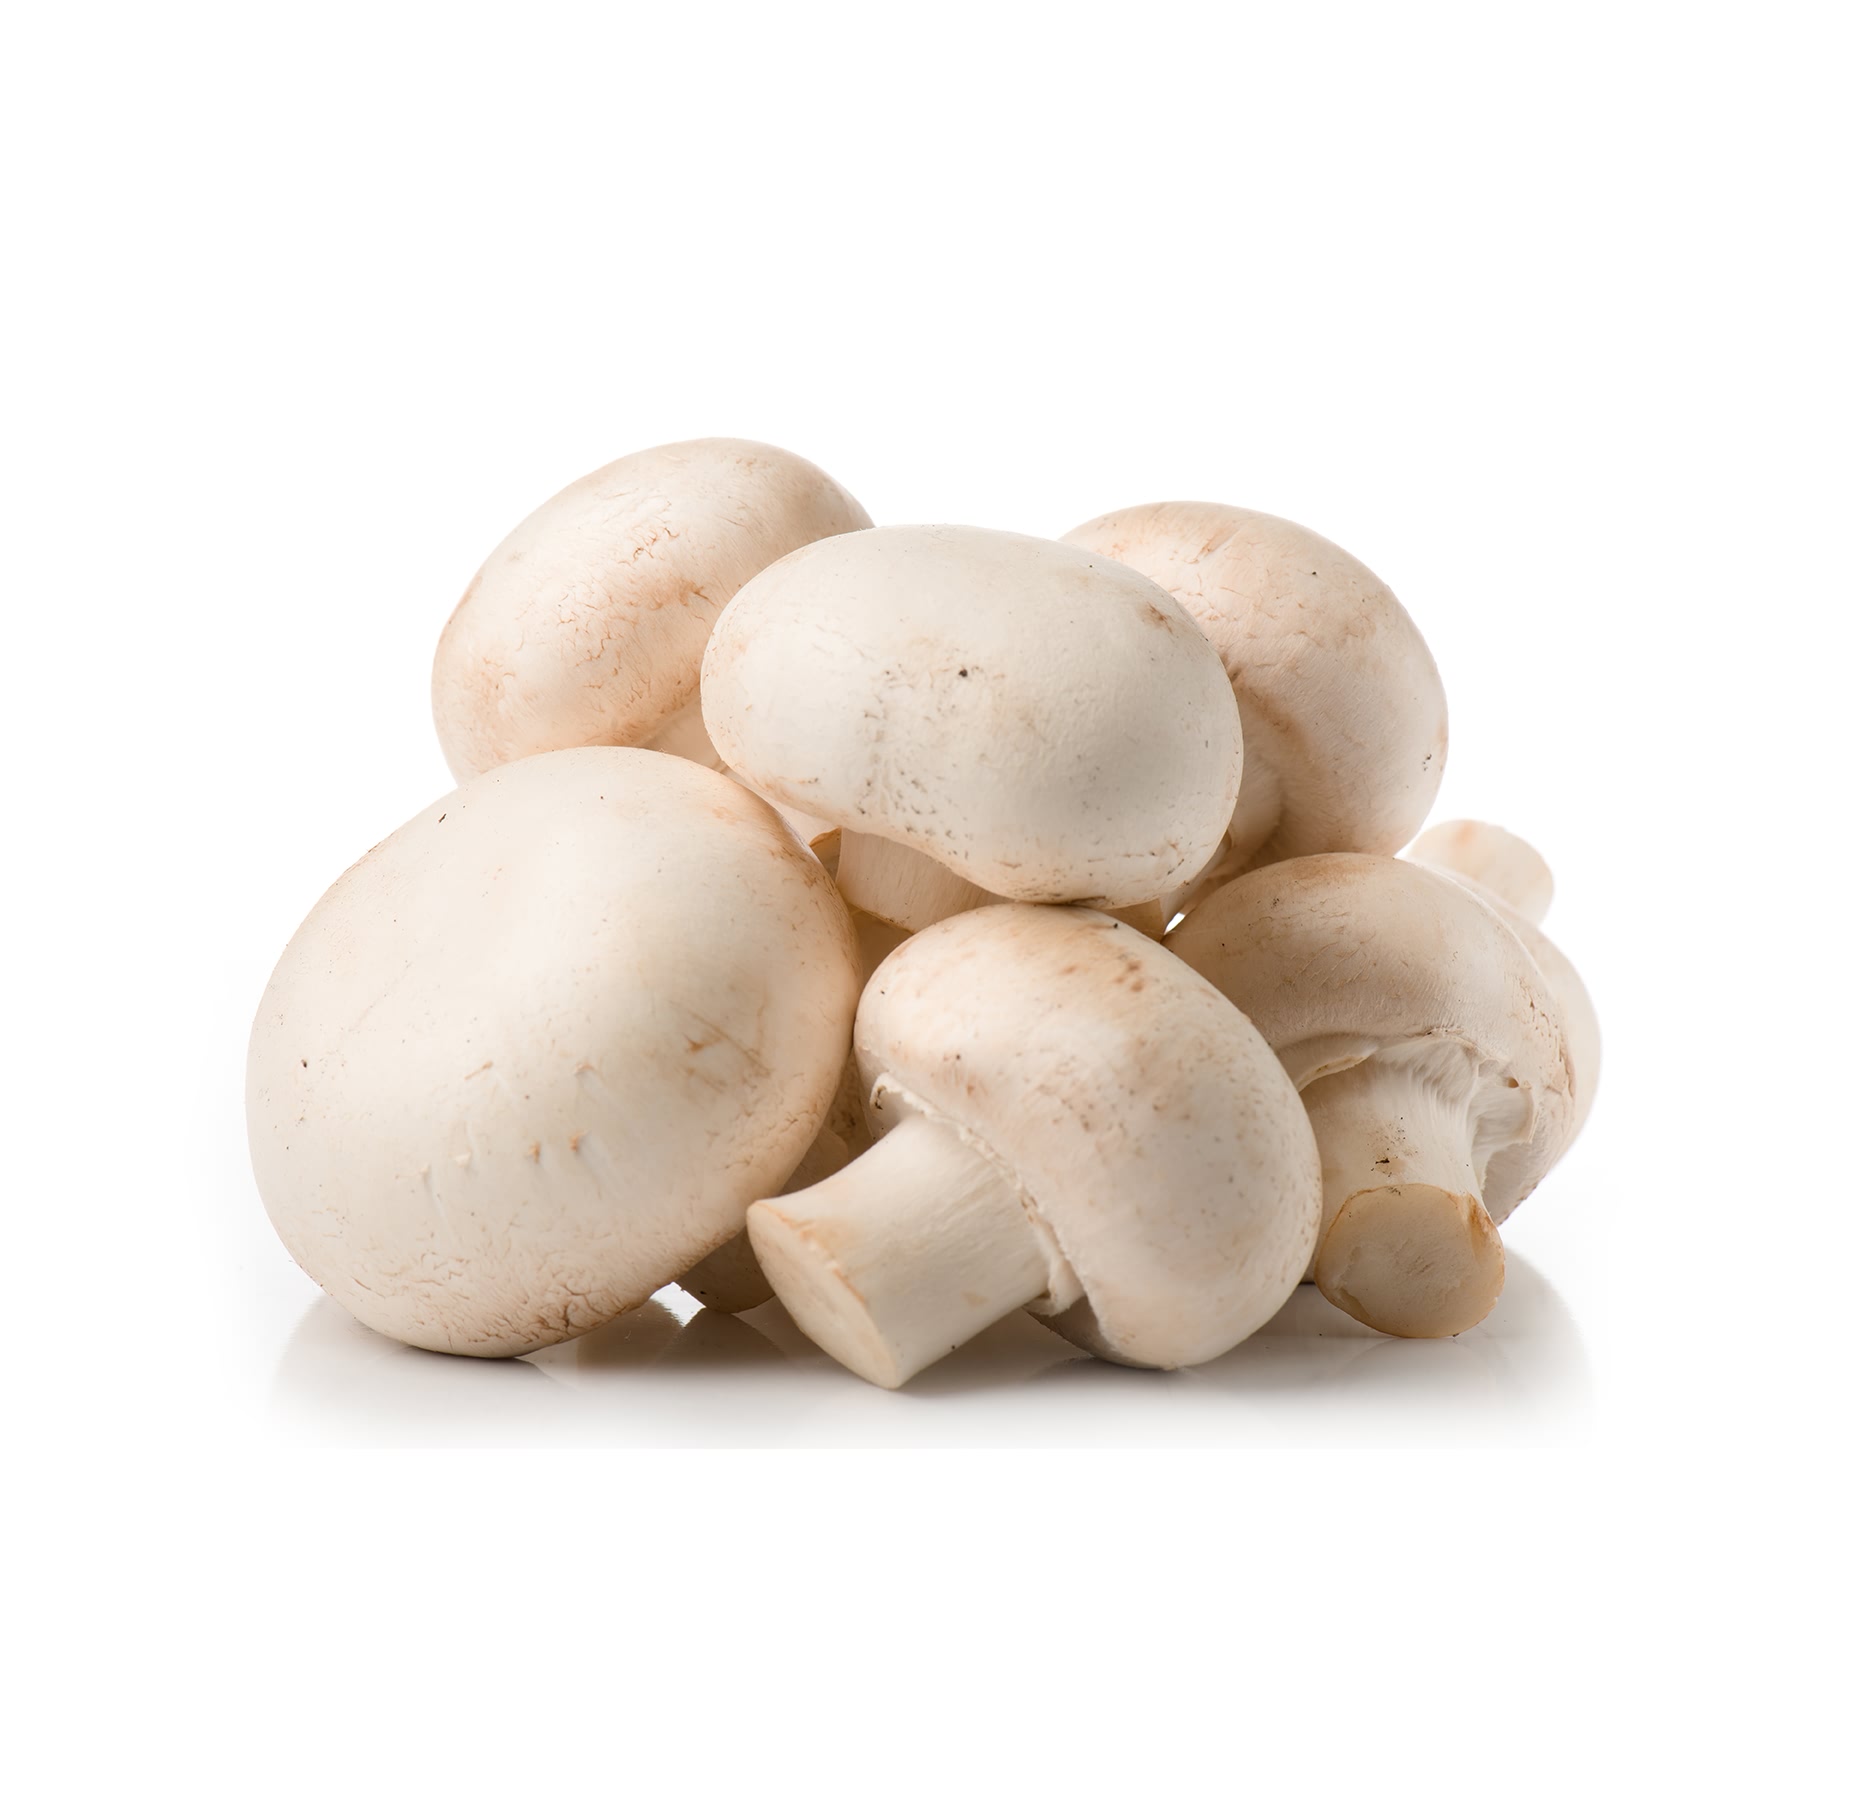 白色香菇干 库存照片. 图片 包括有 真菌, 蔬菜, 蘑菇, 日语, 烹调, 有机, 汉语, 健康, 食物 - 175538412